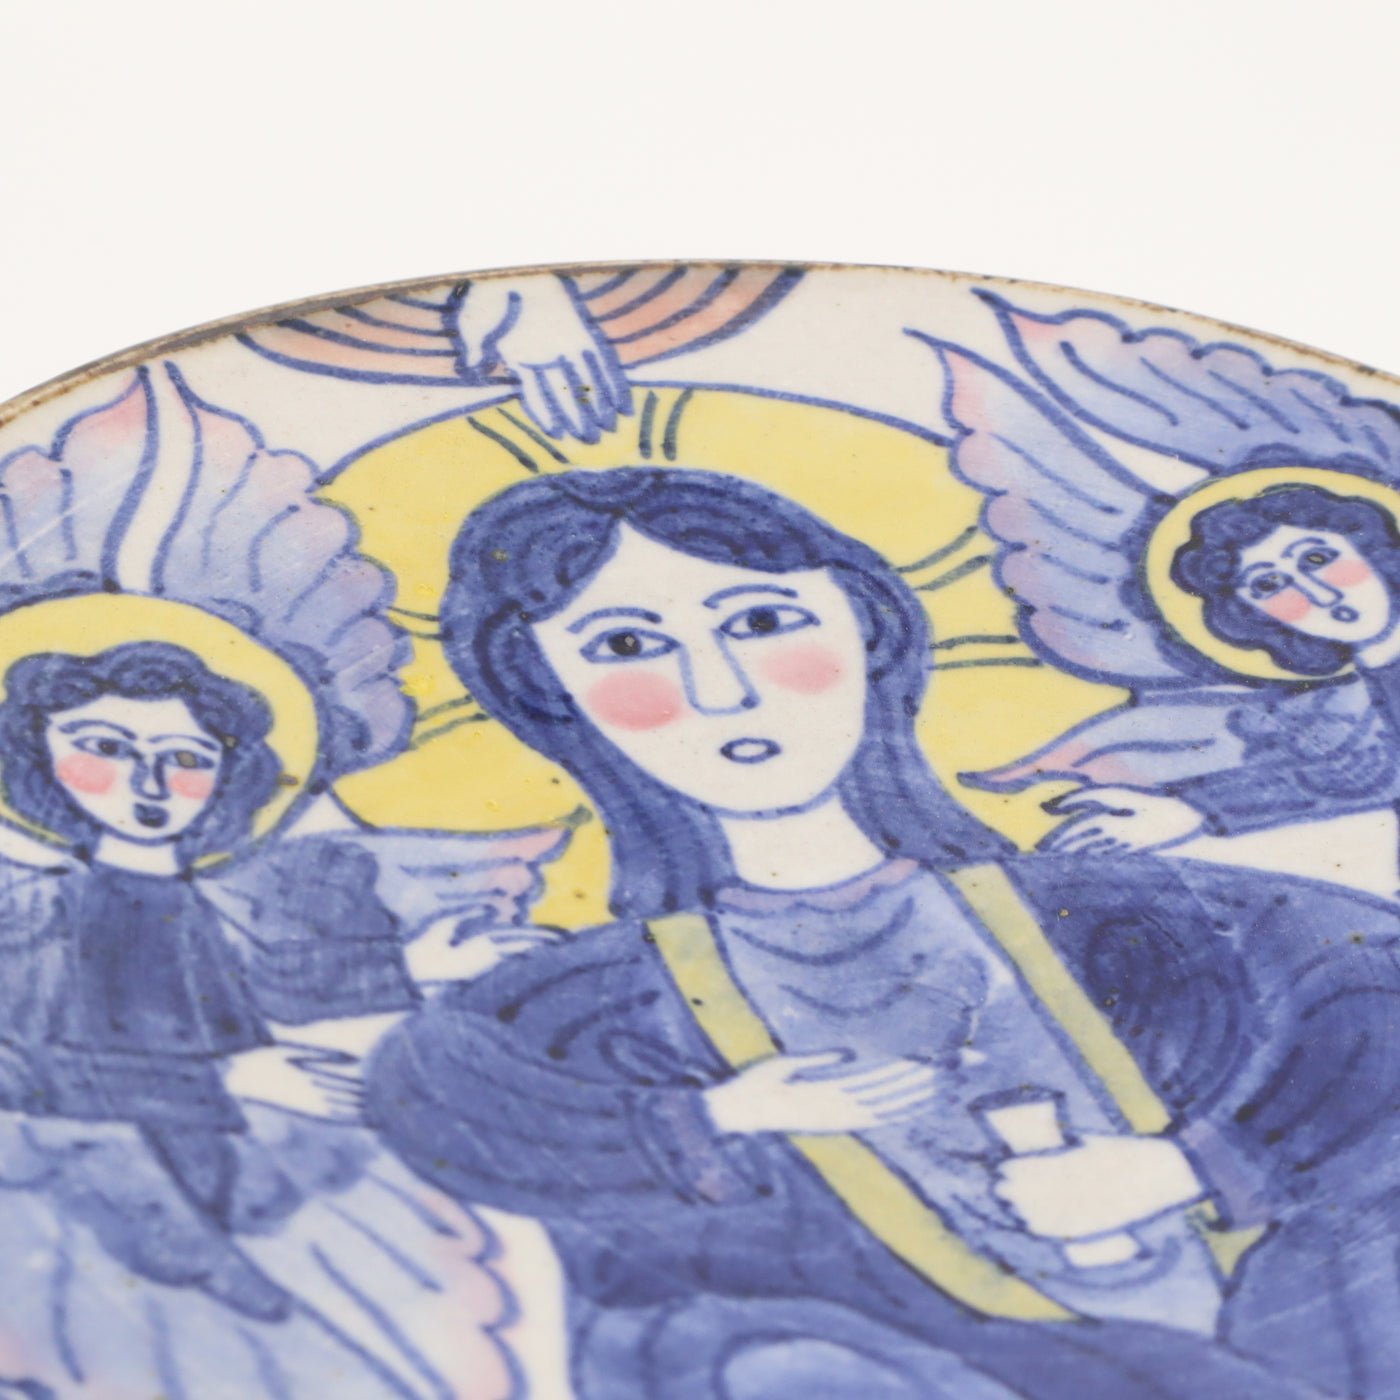 【相上暁美】色絵台皿 聖なる人と天使たち